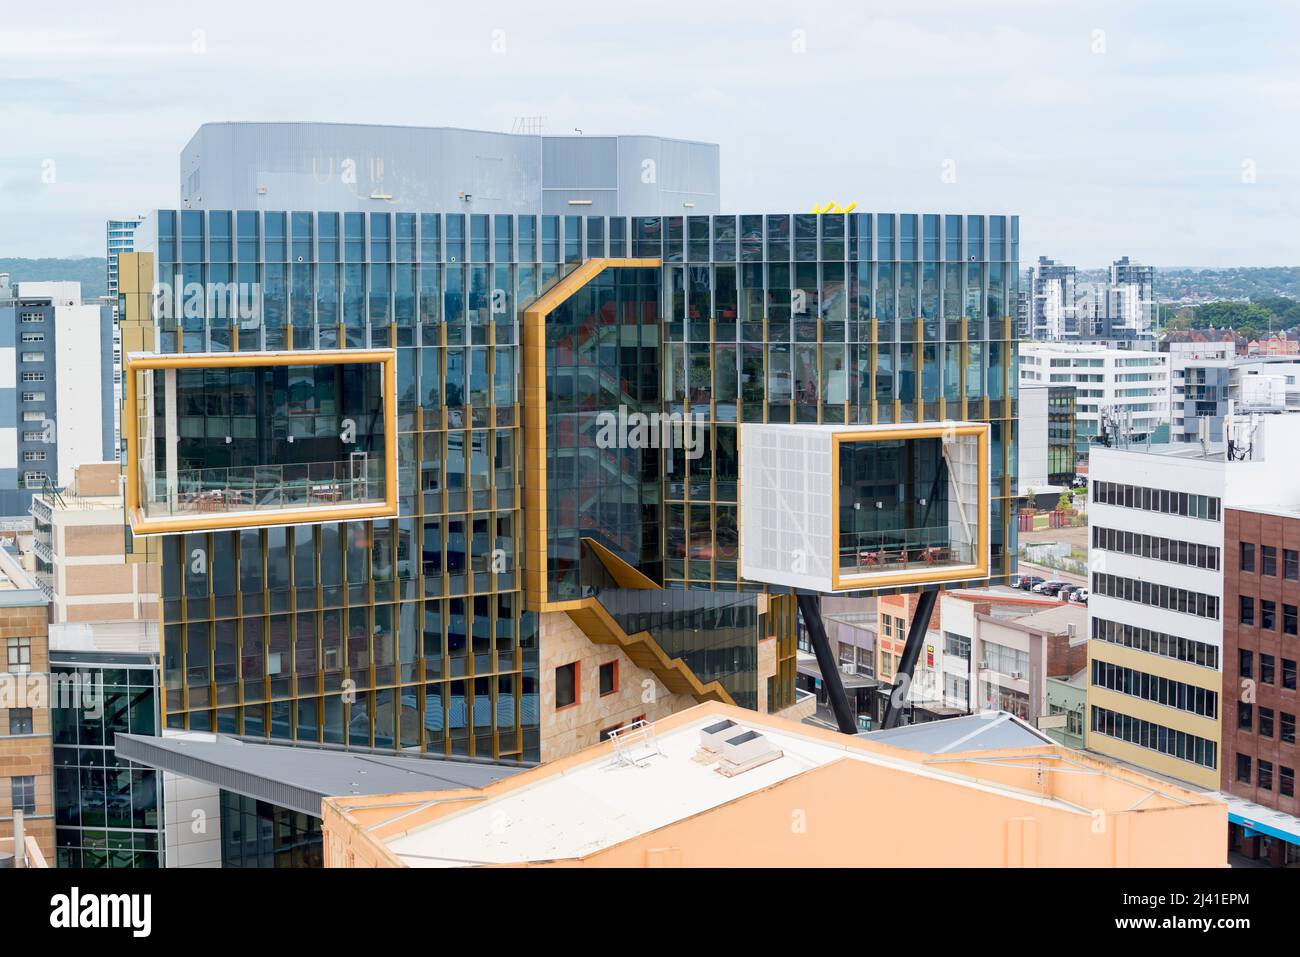 Diseñado por Lyons/EJE Architects, el recinto de educación NUspace (Universidad de Newcastle) en el centro de Newcastle se completó en 2017 Foto de stock